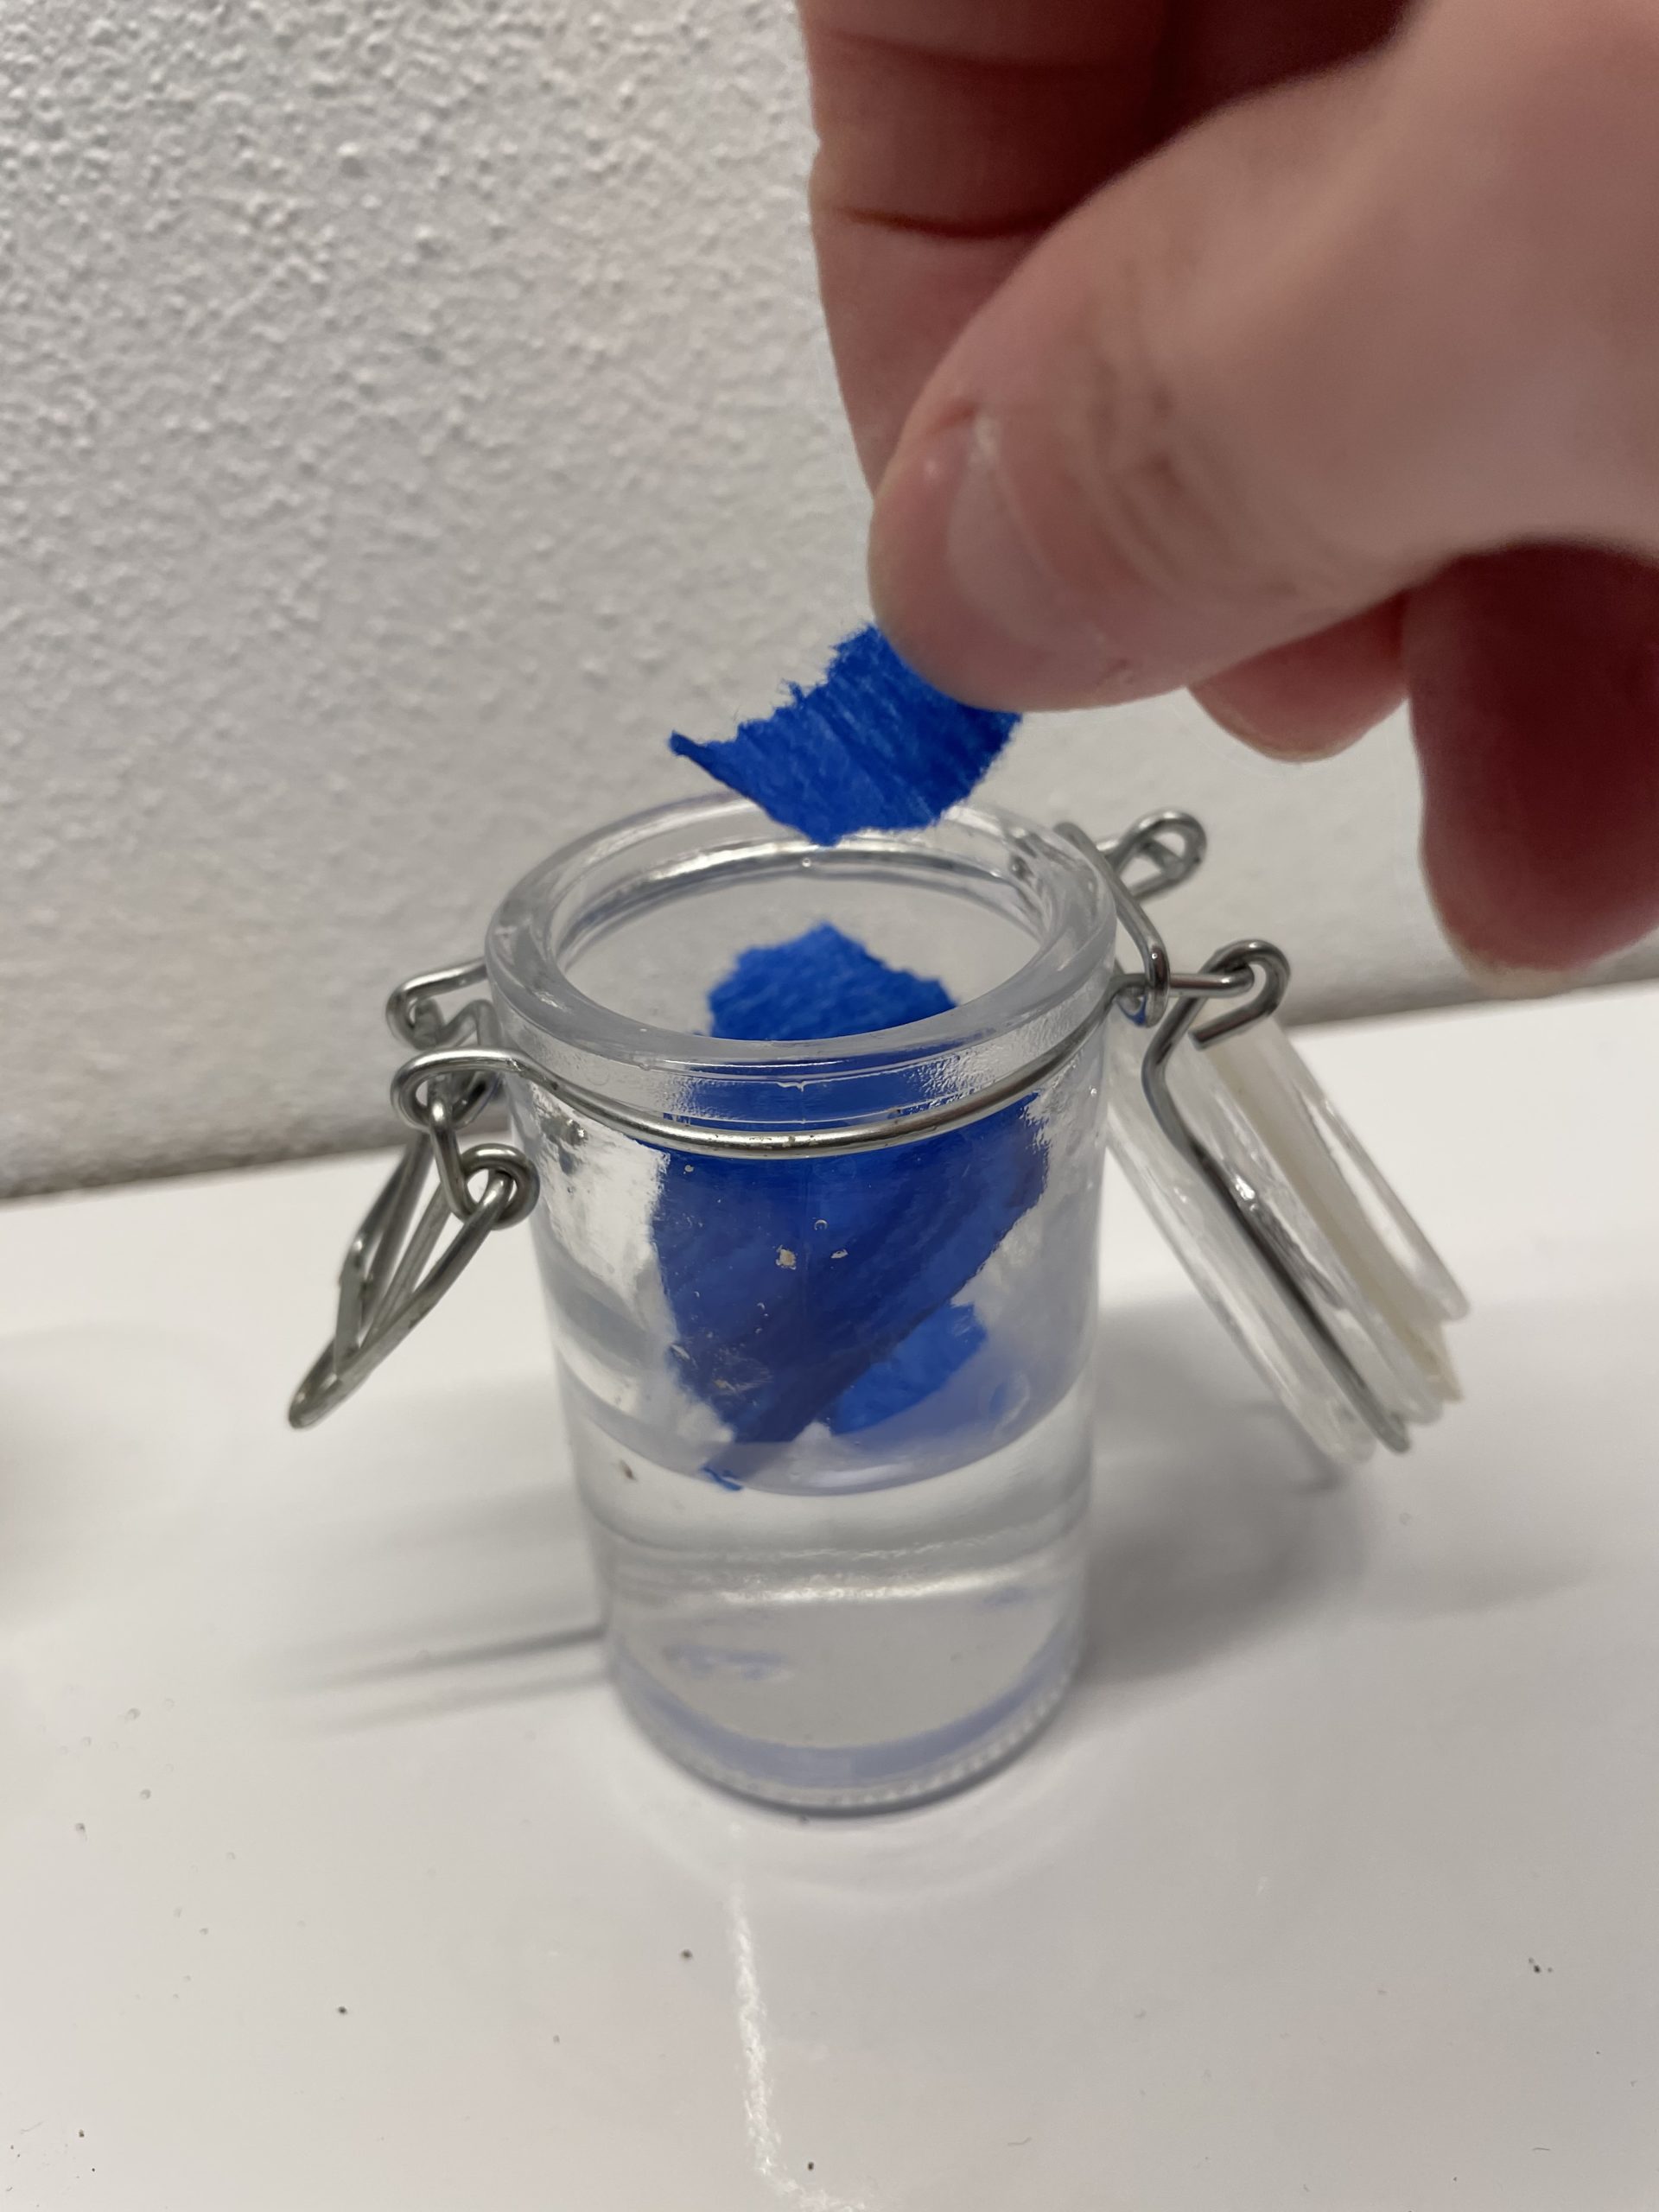 Bild zum Schritt 3 für das Bastel- und DIY-Abenteuer für Kinder: 'Jetzt legt ein paar Schnipsel blaues Krepppapier in das Wasser.'